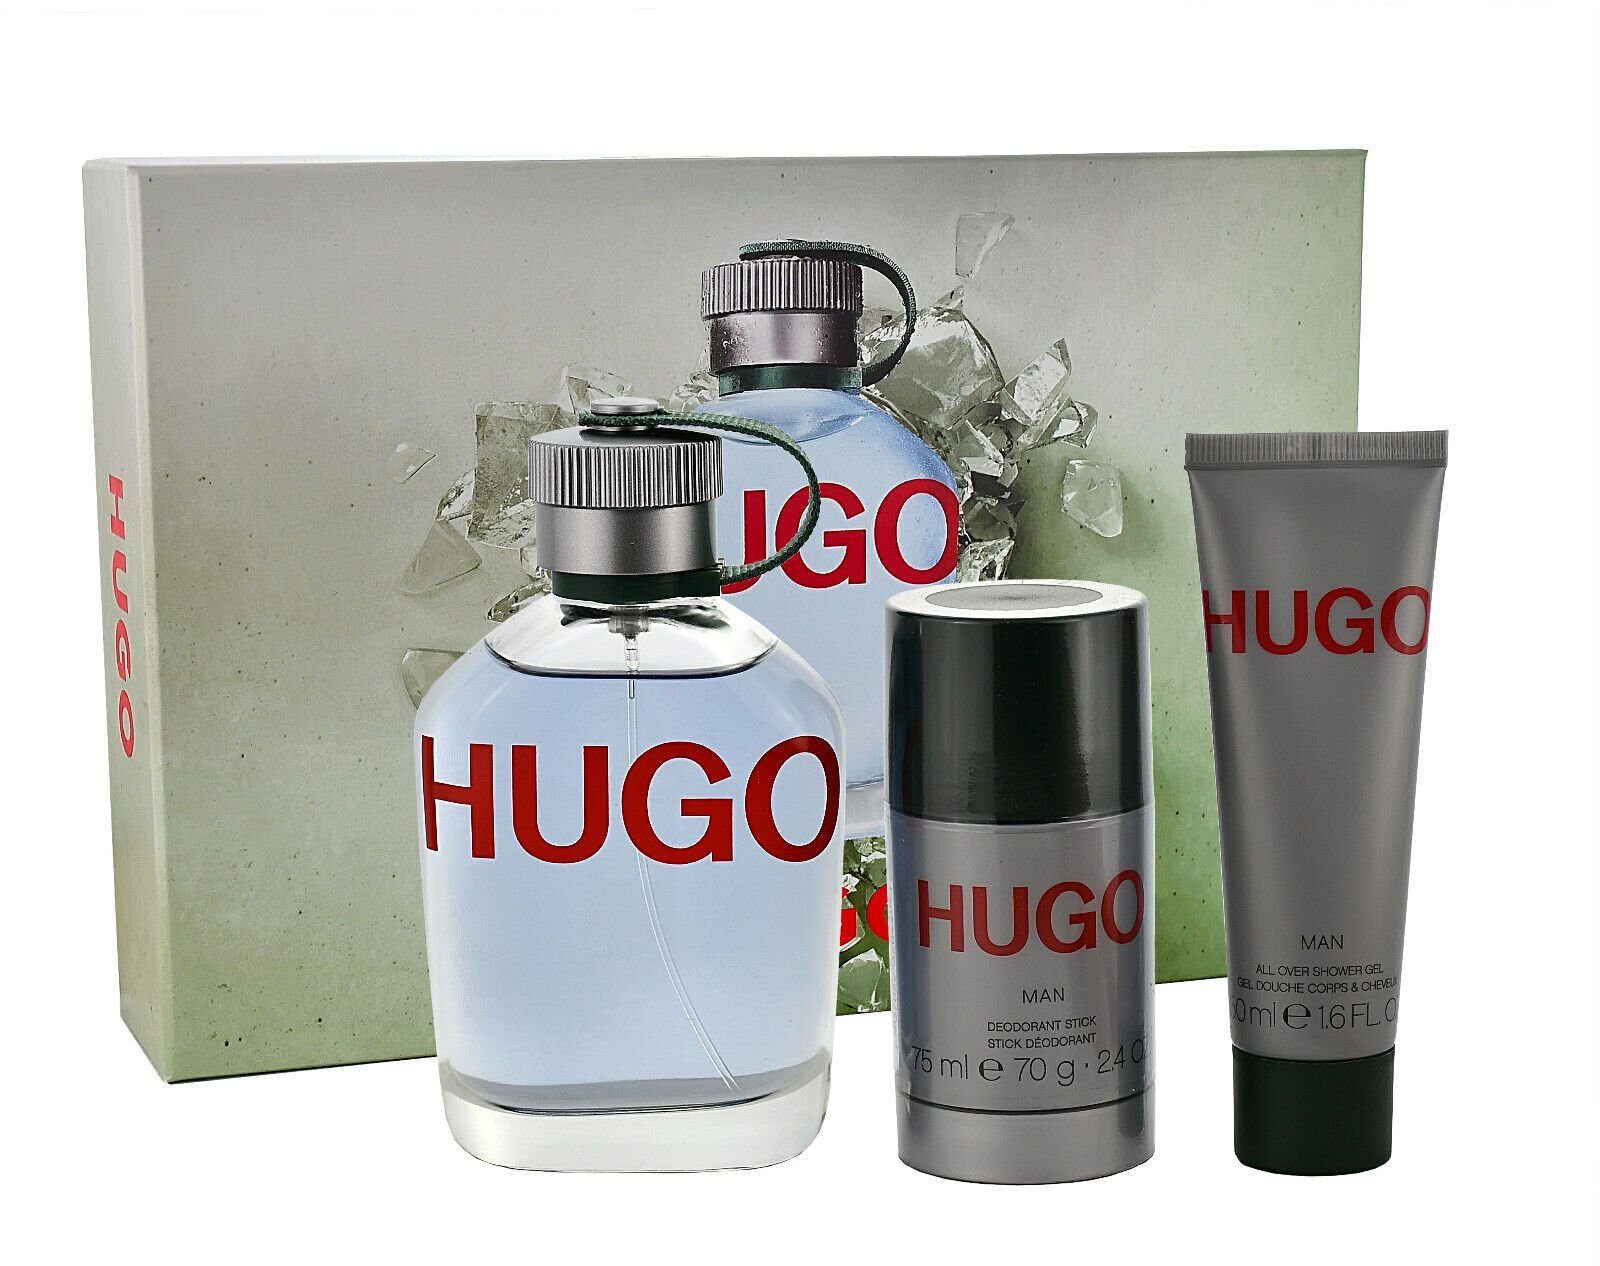 BOSS Duft-Set Hugo Boss Spray EDT Man + Hugo + 125ml 50ml Gel Shower Deodorant 150ml